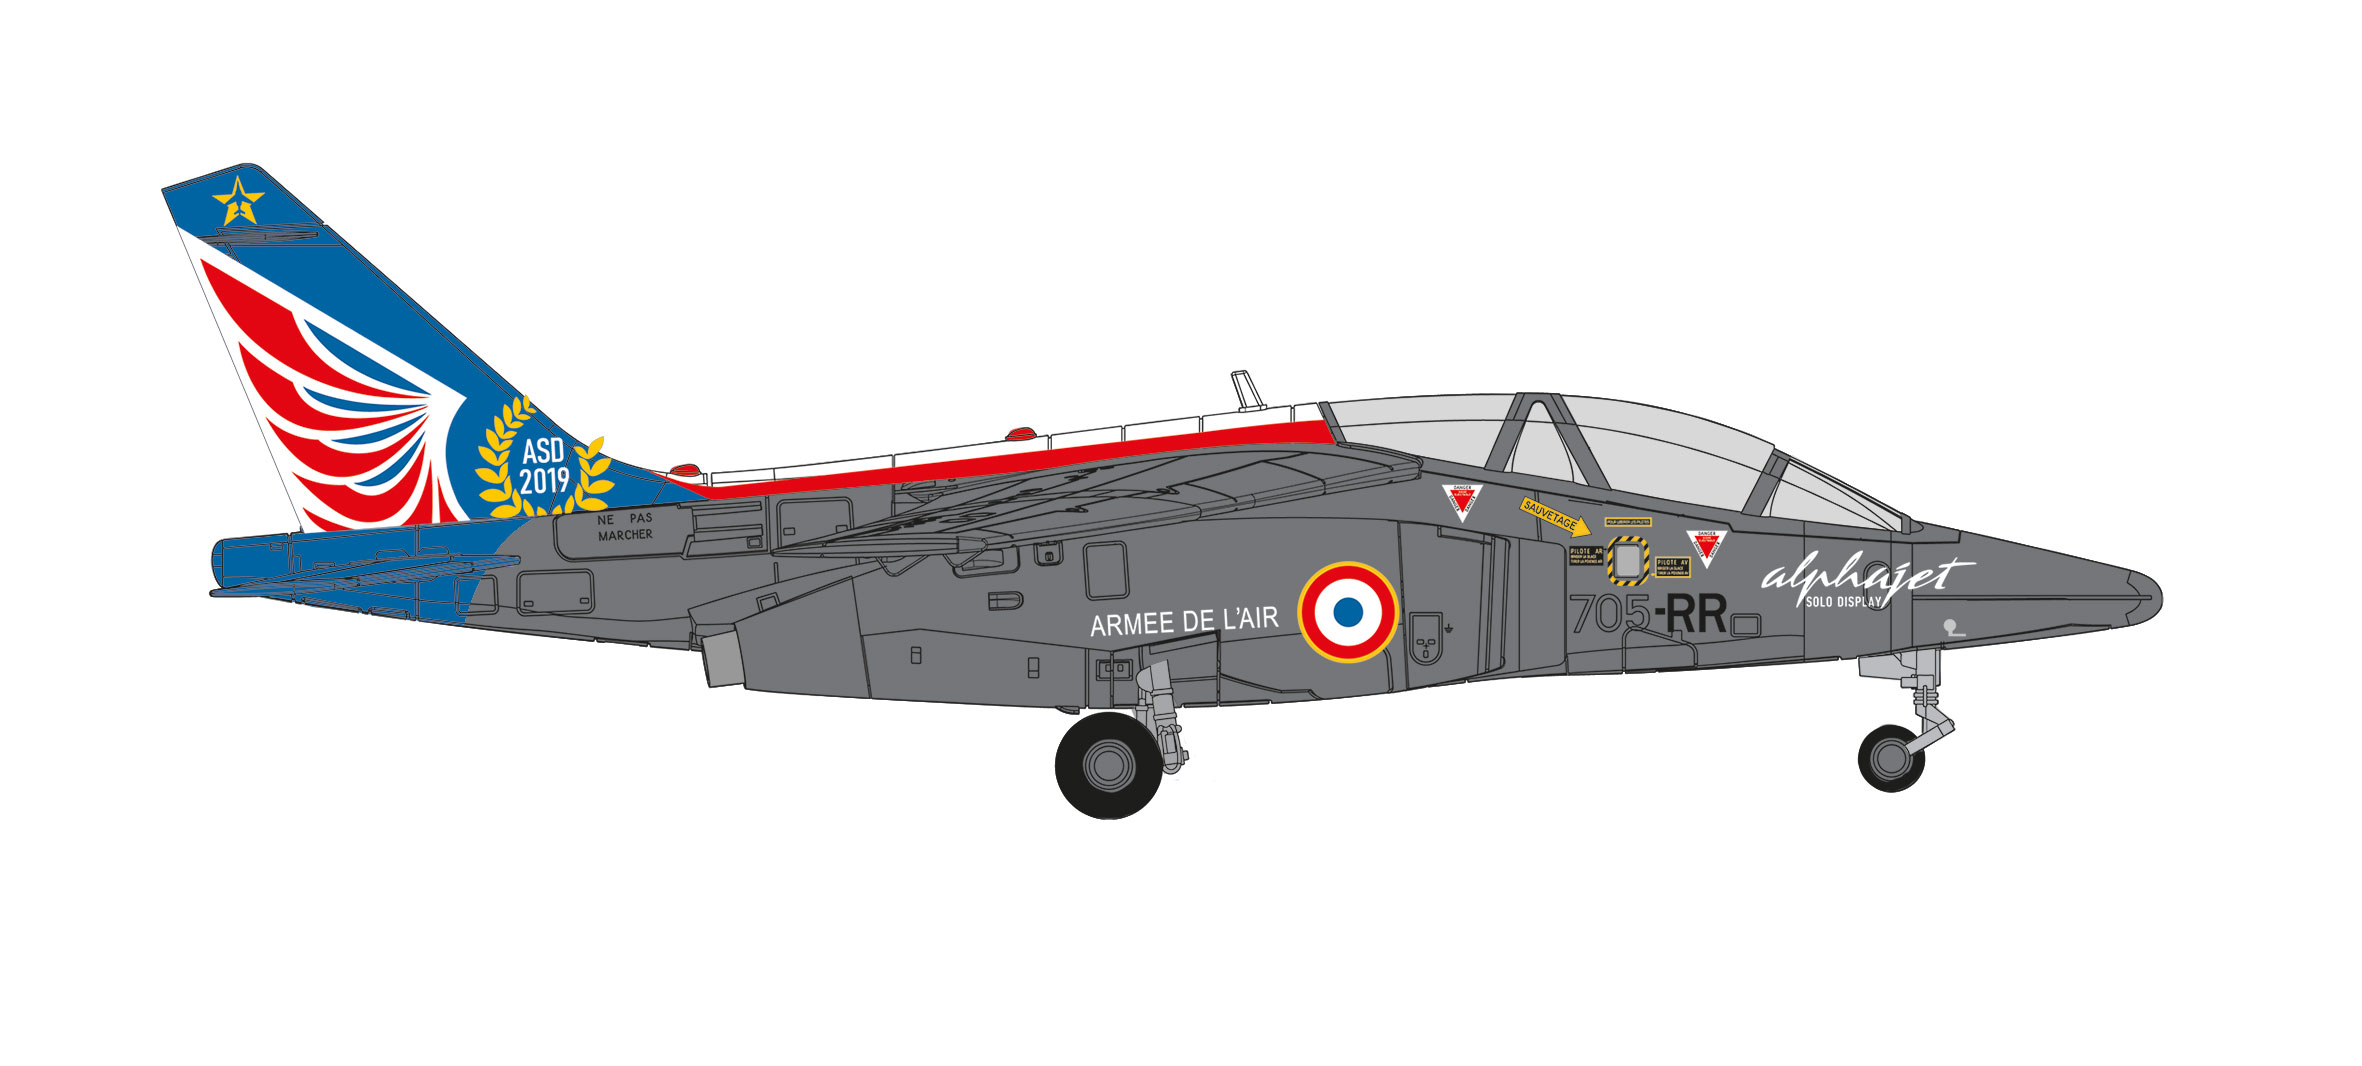 French Air Force Alpha Jet E – Solo Display Team Ecole de l‘Aviation de Chasse 314 “Christian Martell”, Base Aerienne 705 Tours/Val de Loire – 705-RR